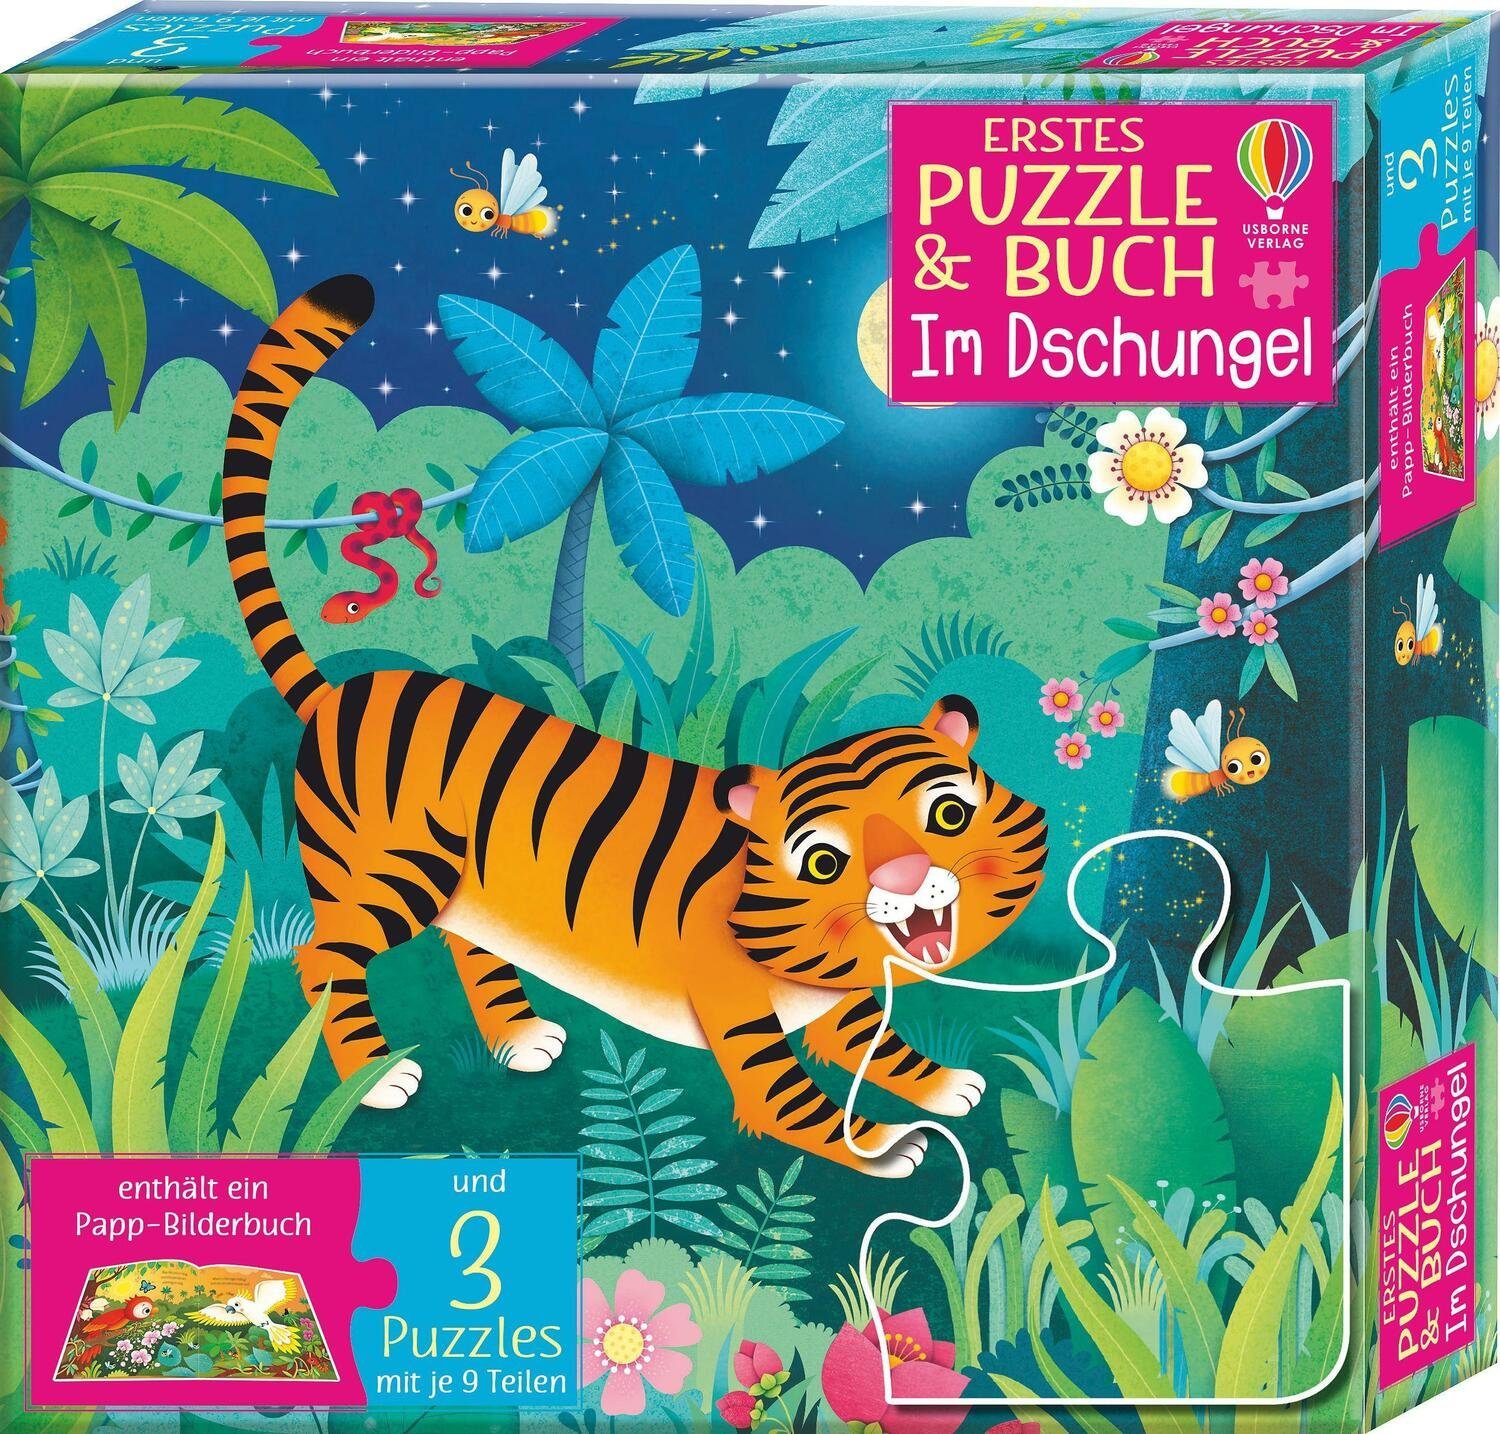 Im Puzzle Dschungel, Buch: Erstes Verlag Usborne Puzzle & Puzzleteile